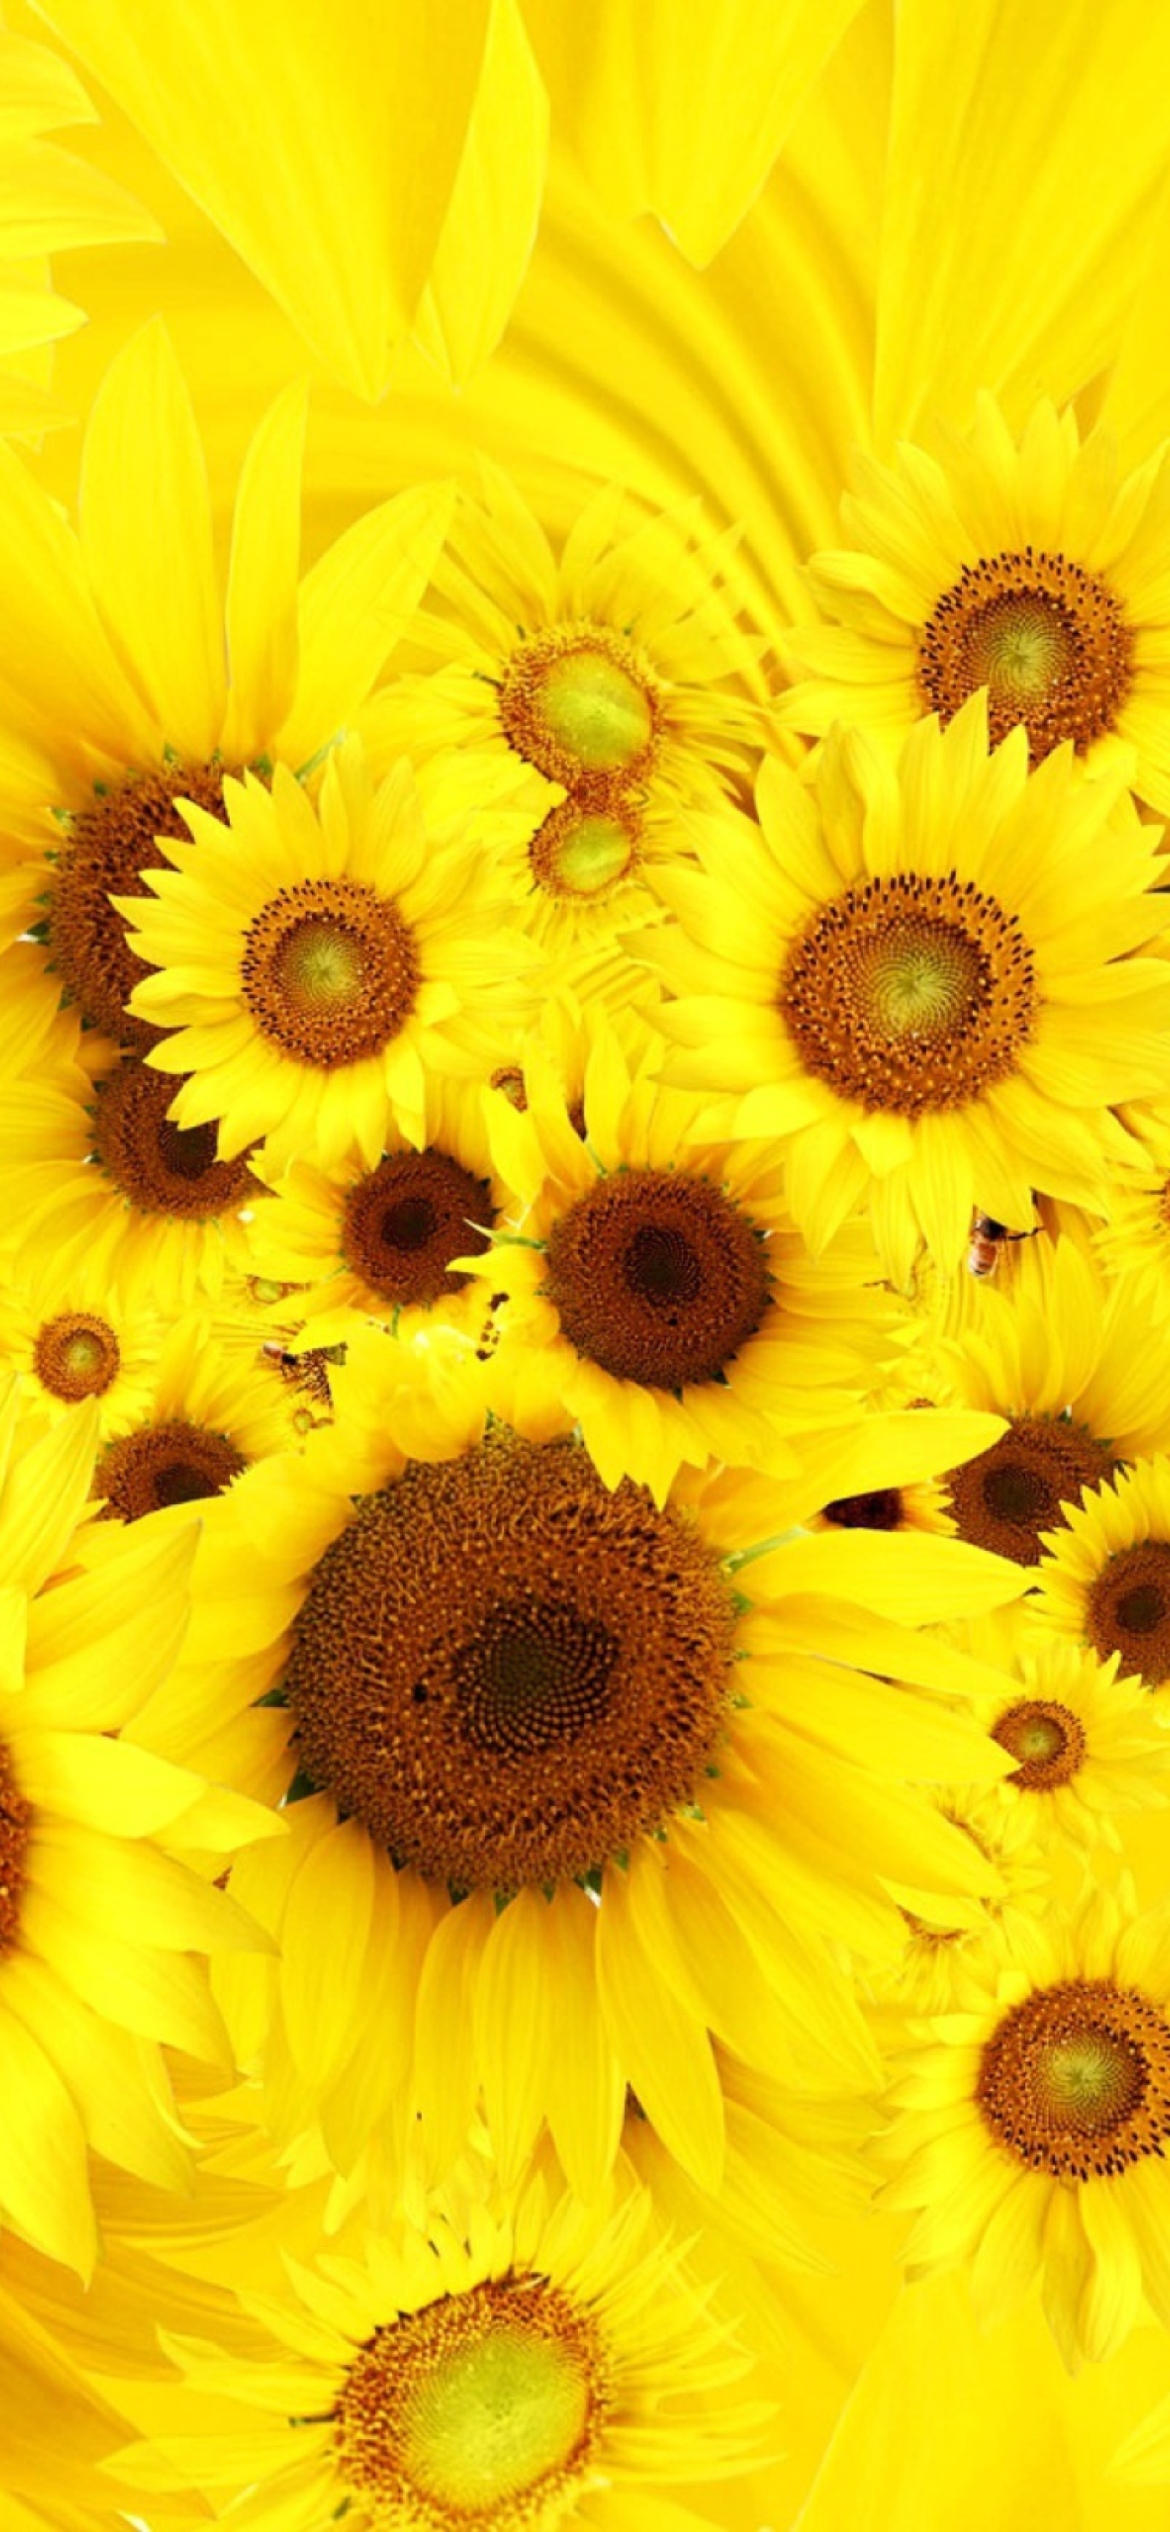 Das Cool Sunflowers Wallpaper 1170x2532